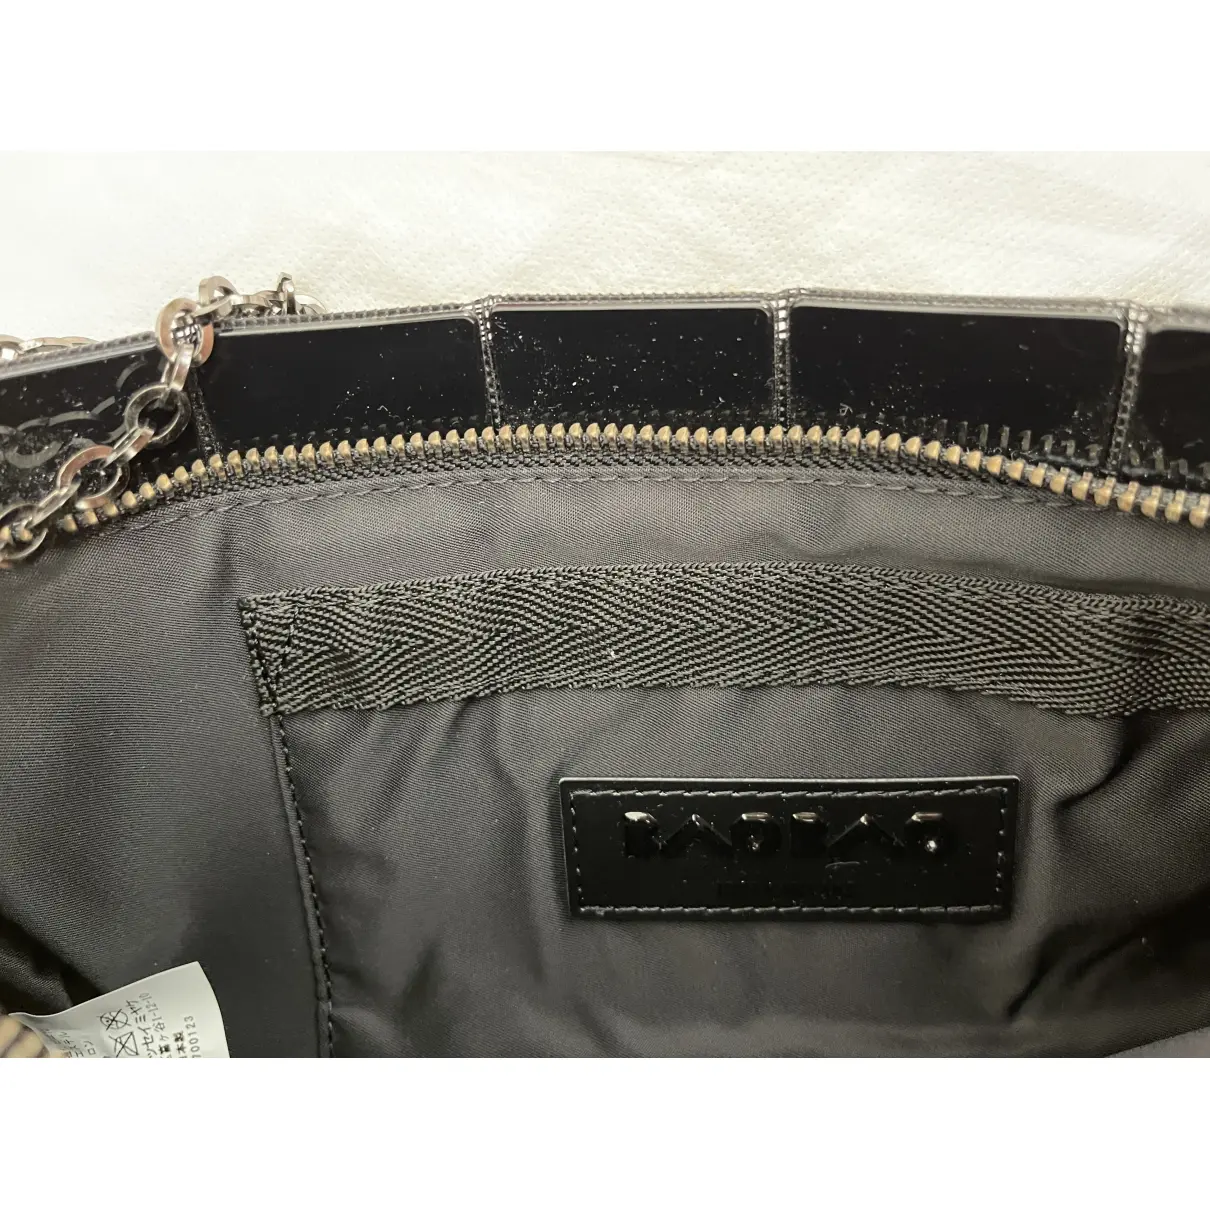 Luxury Issey Miyake Handbags Women